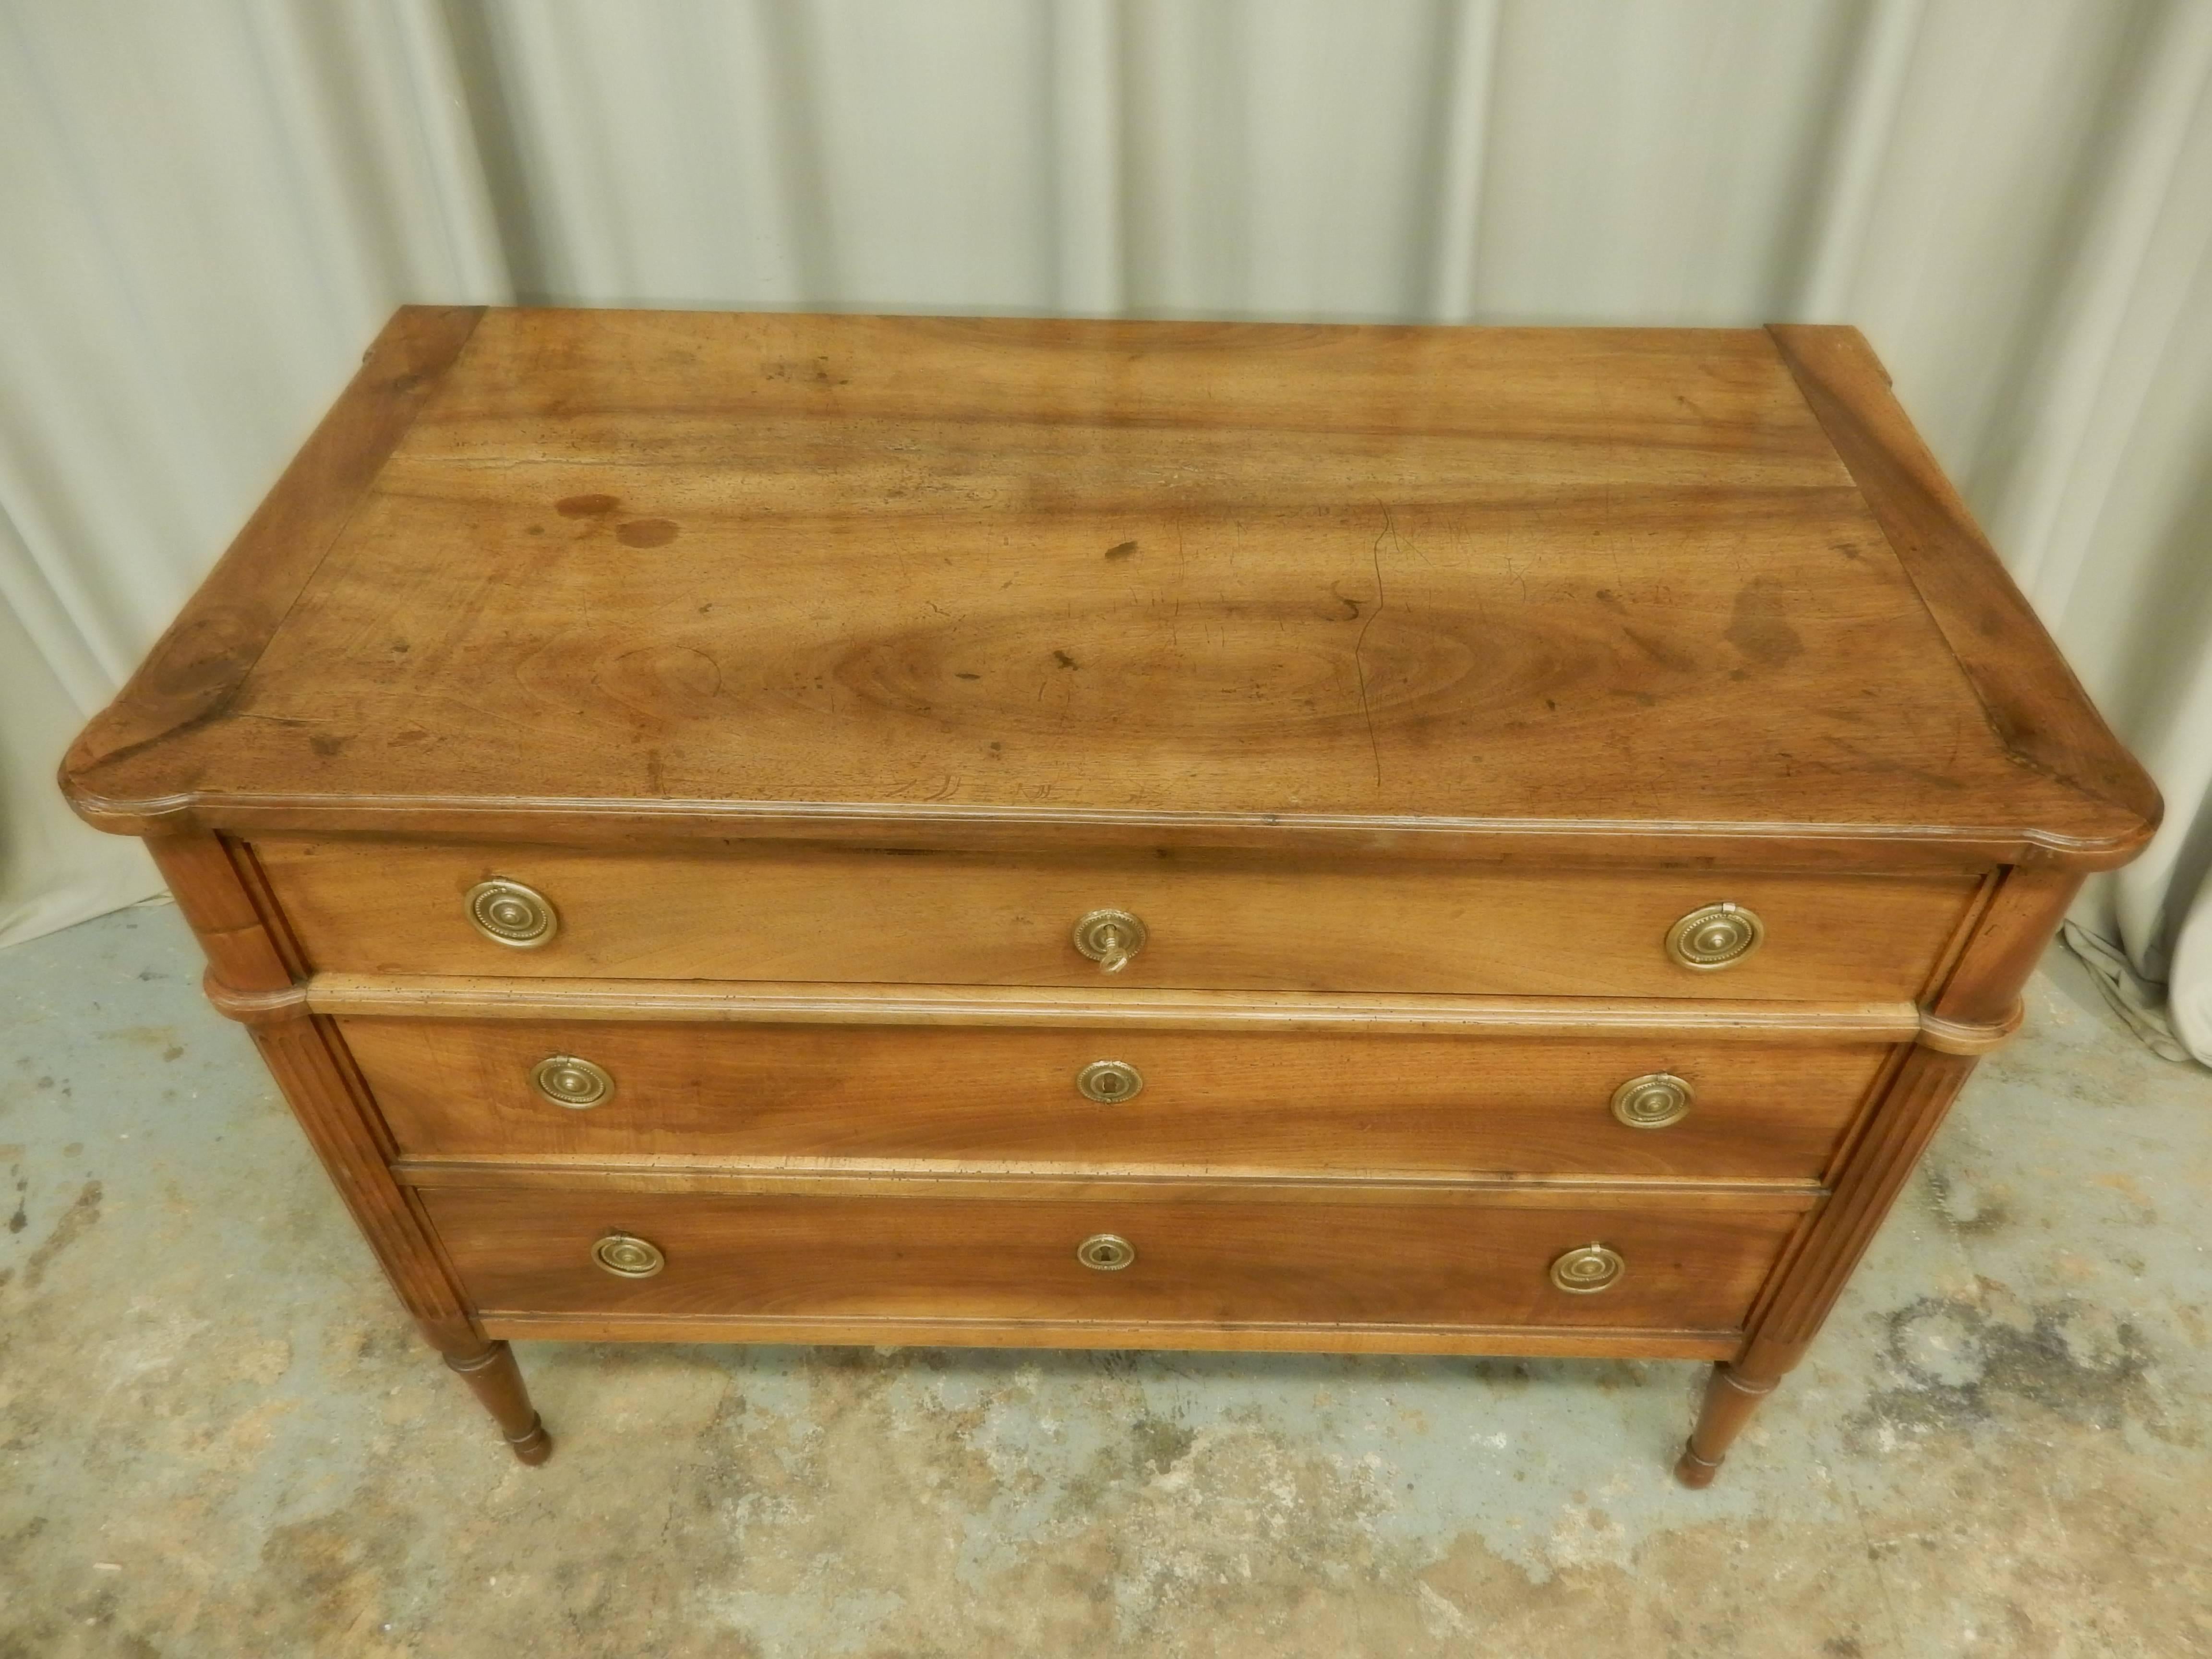 Three-drawer walnut Louis XVI style 19th century commode. Very nice patina.